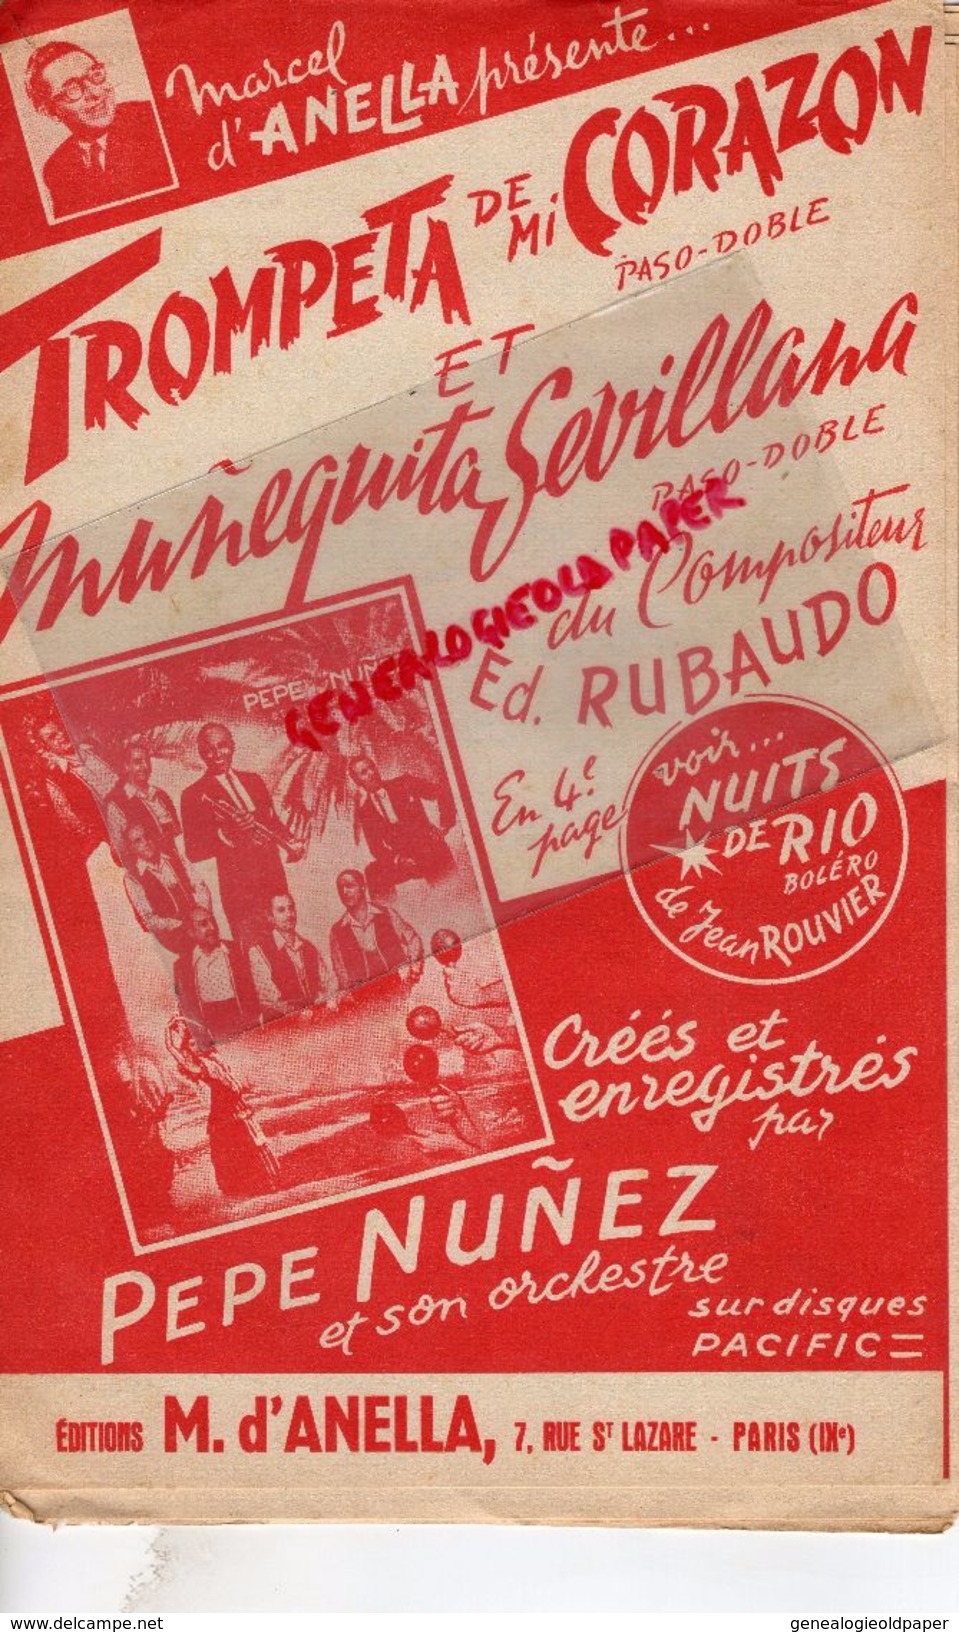 PARTITION MUSICALE- TROMPETA DE MI CORAZON-ED. RUBAUDO-PEPE NUNEZ-D'ANELLA 7 RUE ST LAZARE PARIS-NUITS  RIO JEAN ROUVIER - Partitions Musicales Anciennes